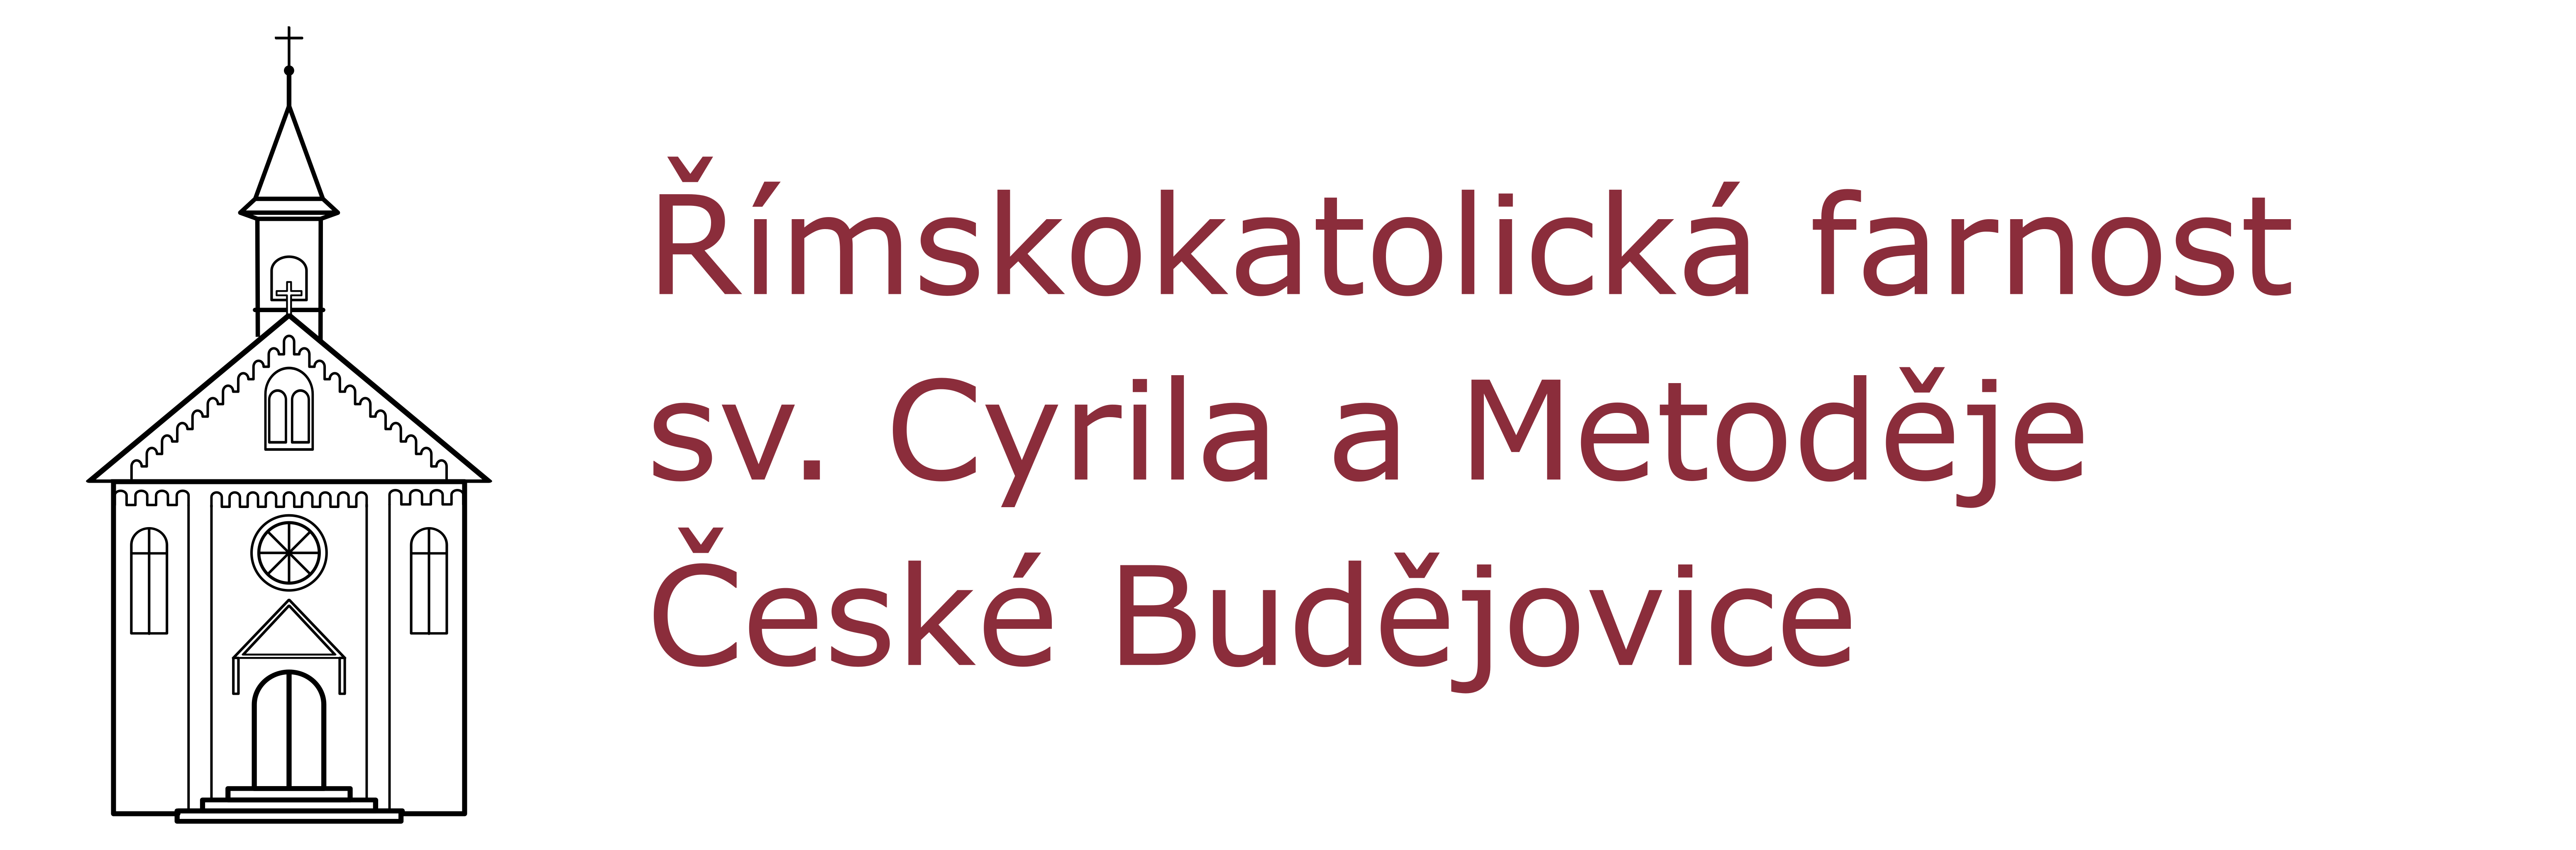 Logo  intence - Římskokatolická farnost sv. Cyrila a Metoděje České Budějovice - Suché Vrbné